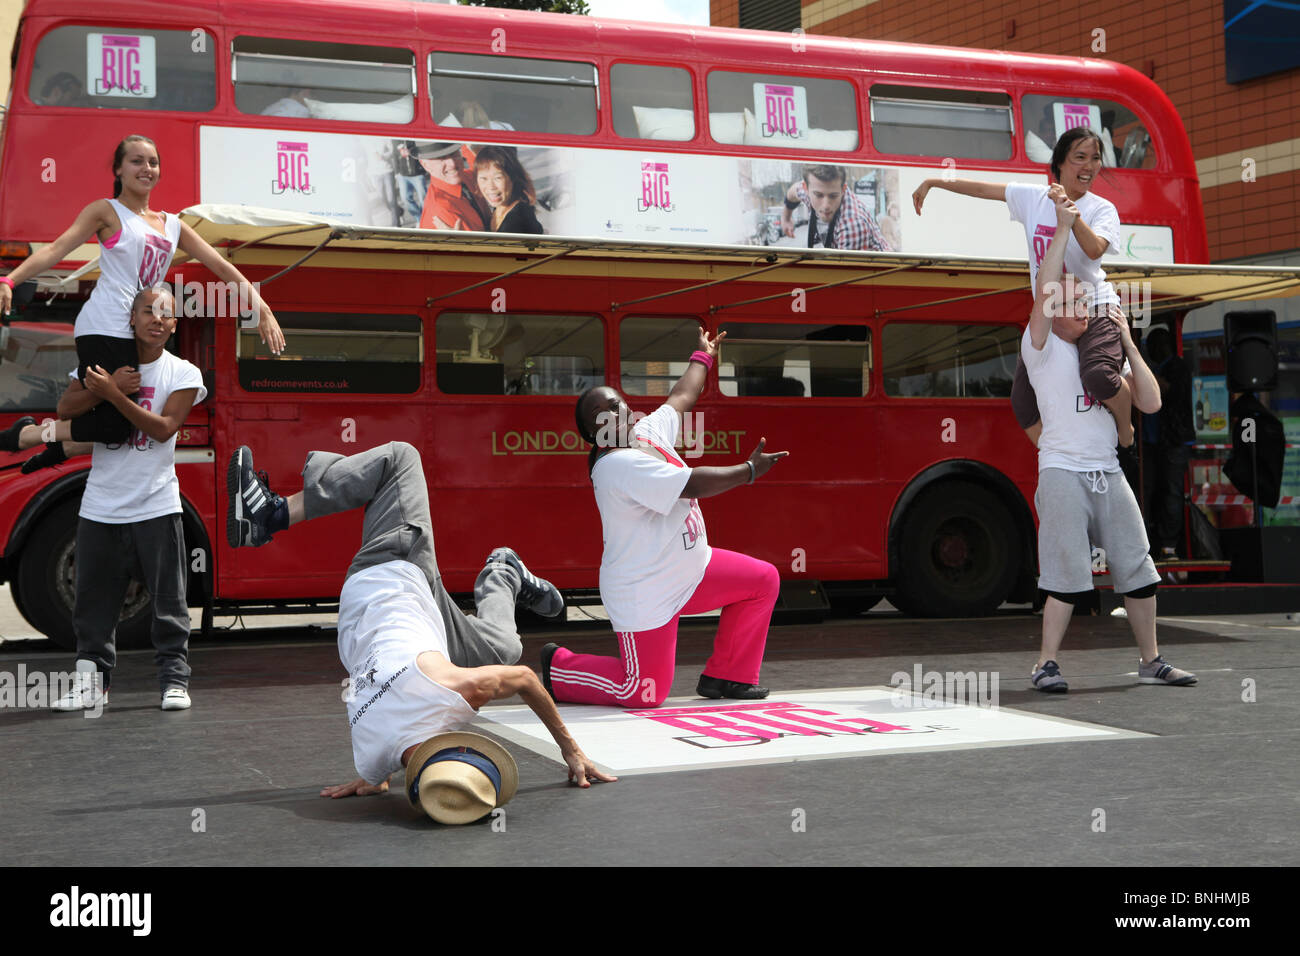 La t mobile flash mob dance danse équipe lors d'un événement à Edmonton au nord de Londres. Il y a un vieux bus rouge de Londres en th Banque D'Images